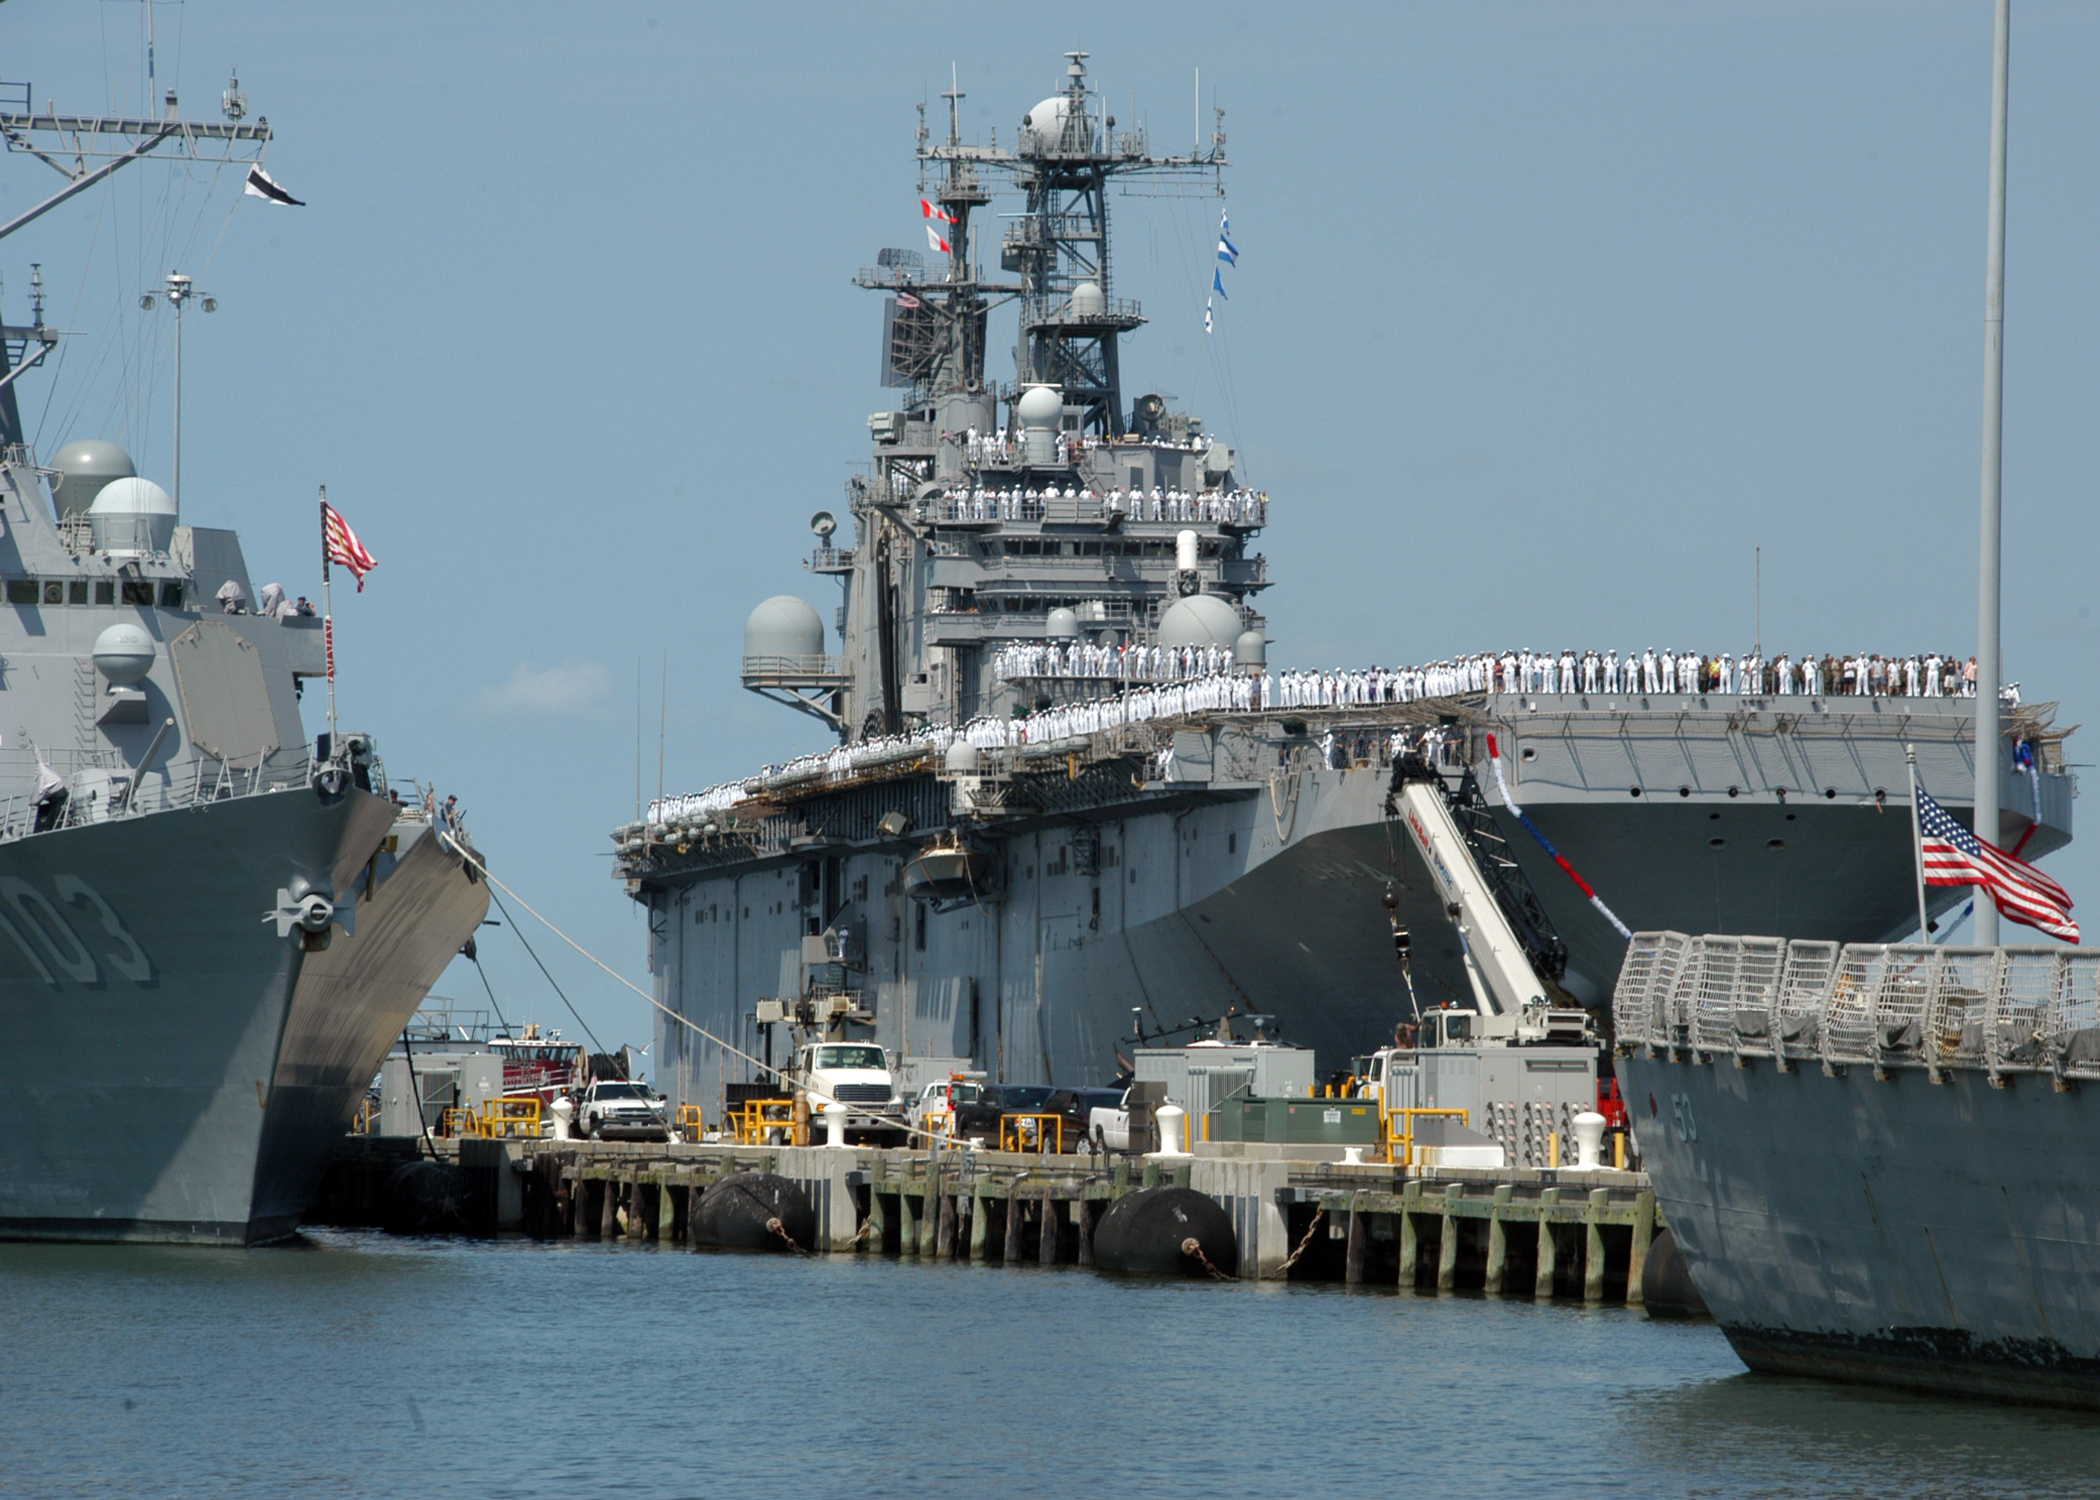 US_Navy_100815-N-6764G-072_The_Tarawa-class_amphibious_assault_ship_USS_Nassau_(LHA_4).jpg